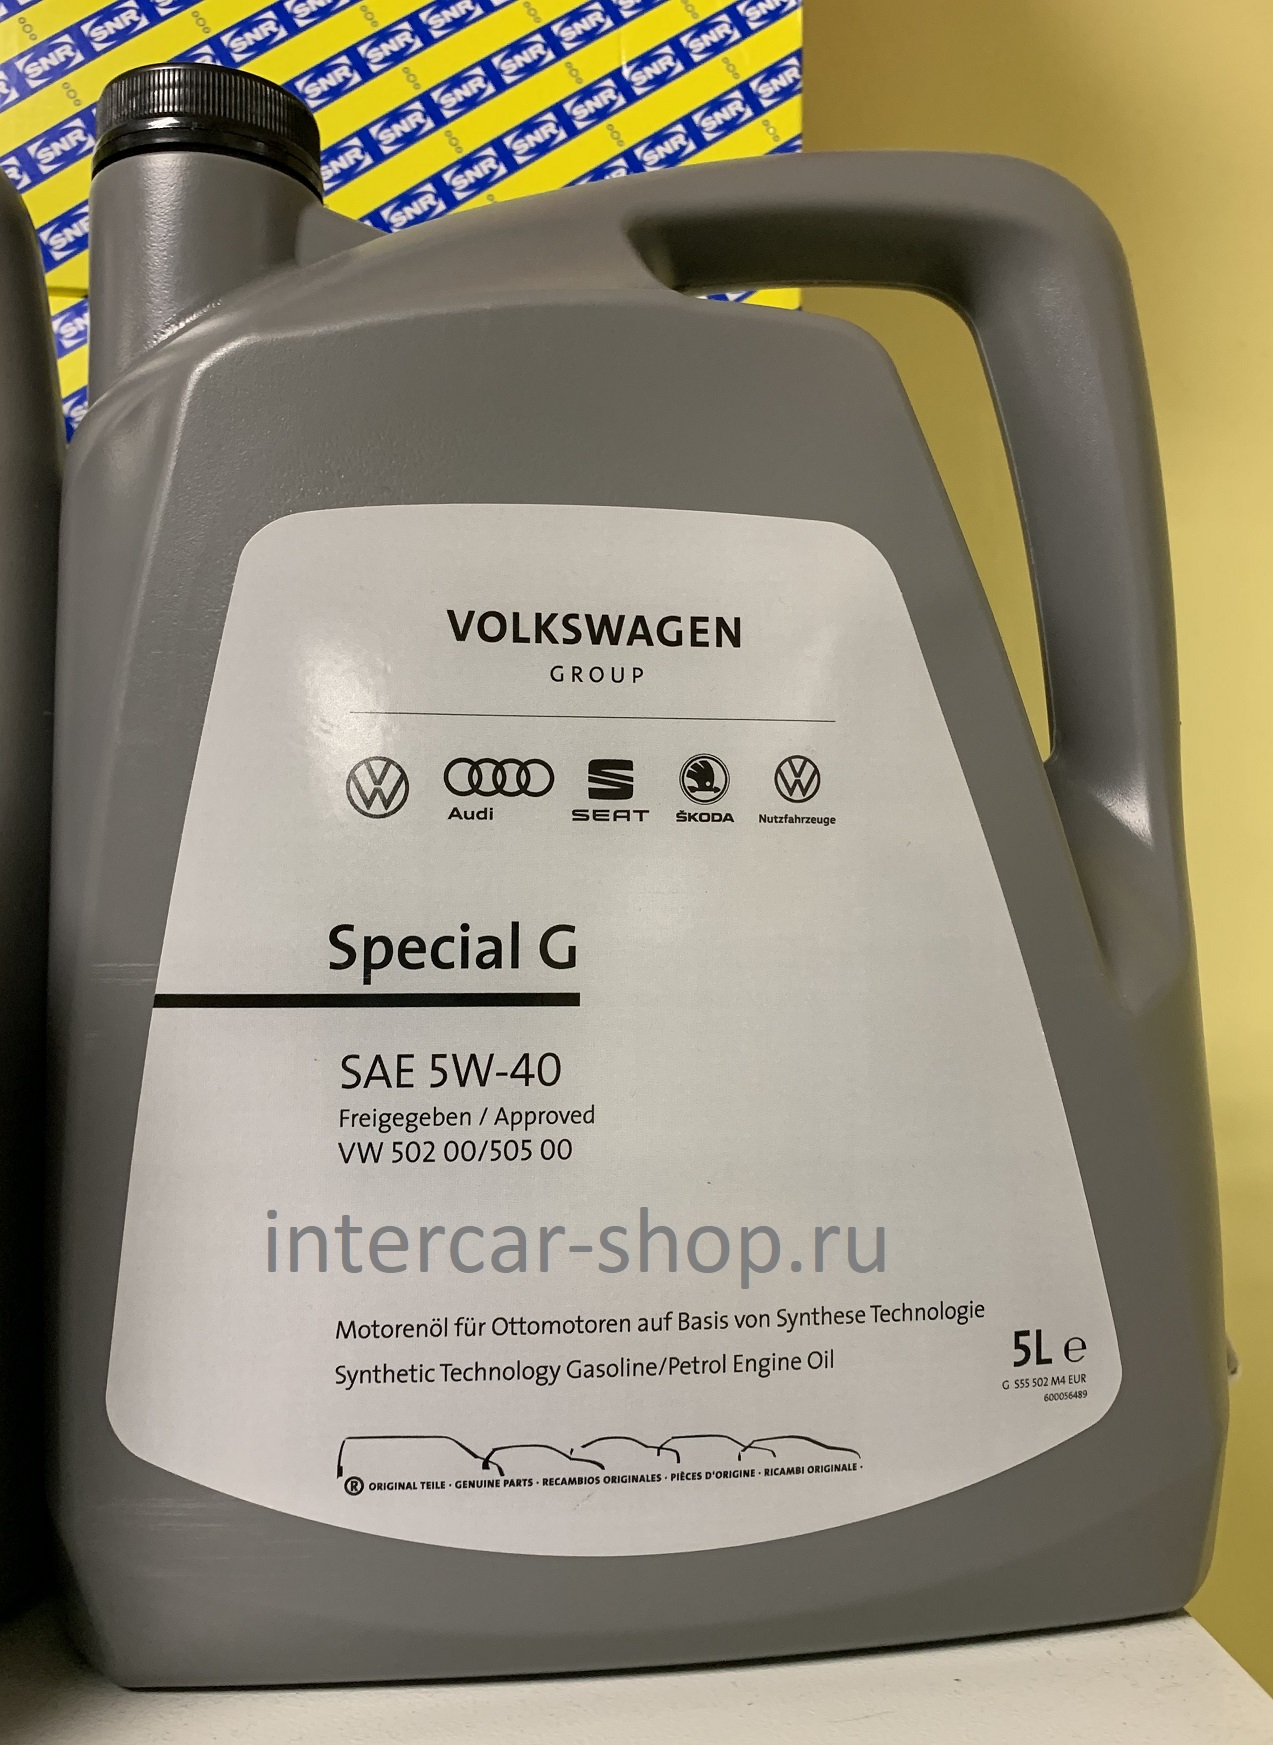 VAG G 052 502 m4. VAG Original Special g 5w40. 502 505 Volkswagen. VAG G r52 502 m4. Масло vw 502 505